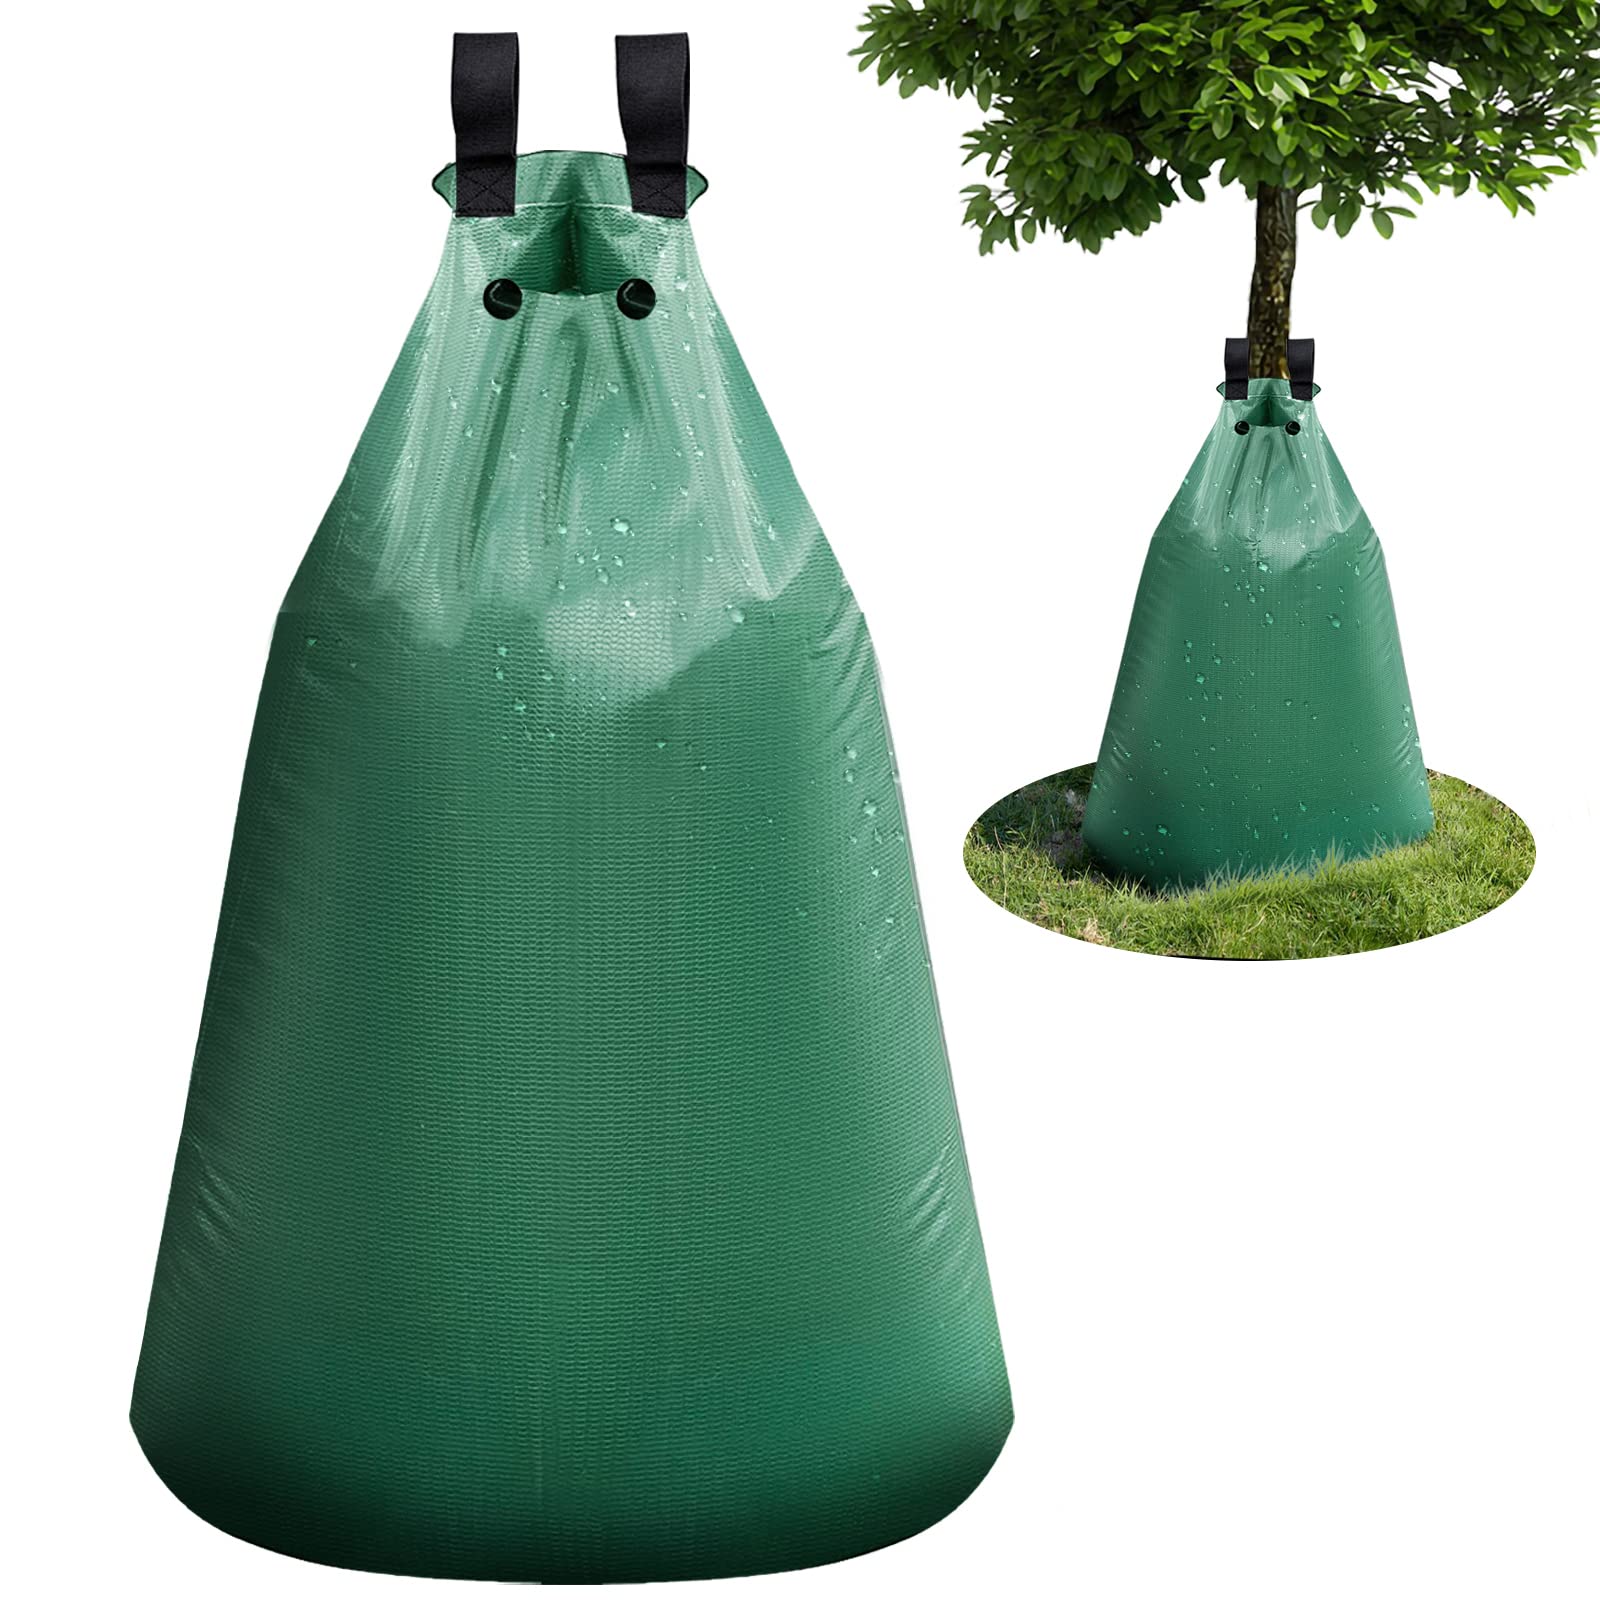 Baumbewässerungsbeutel,75 Liter PVC Bewässerungssack,Bewässerungsbeutel/Wassersack/Bewässerungssystem für Bäume, aus UV beständigem PVC, Planzunterstützung für heiße Sommer (5 Stück)